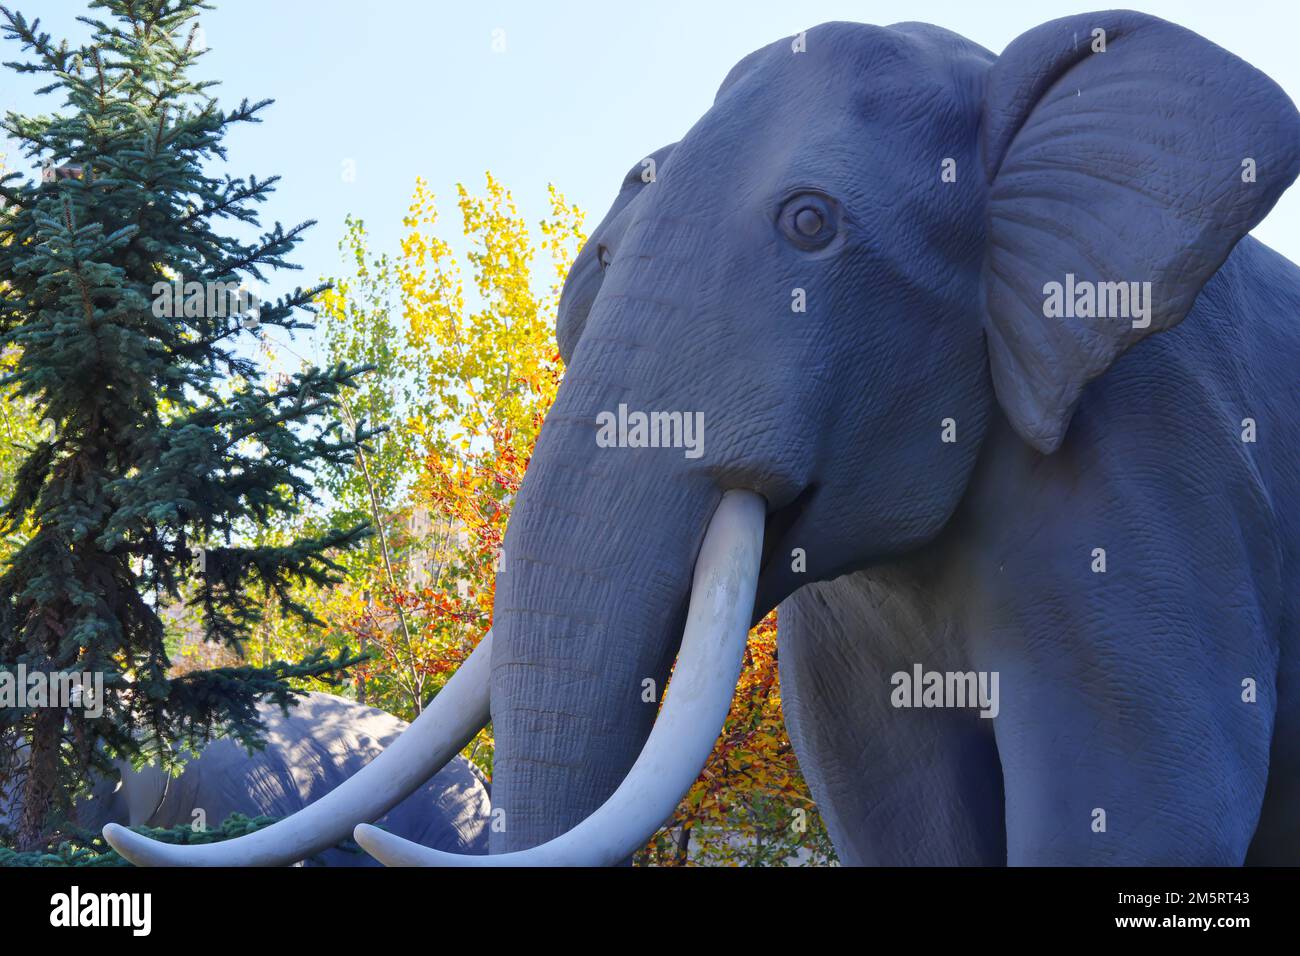 Illustrazione di mammut da un museo all'interno di alberi. Primo piano della testa e dell'avvisatore acustico Foto Stock